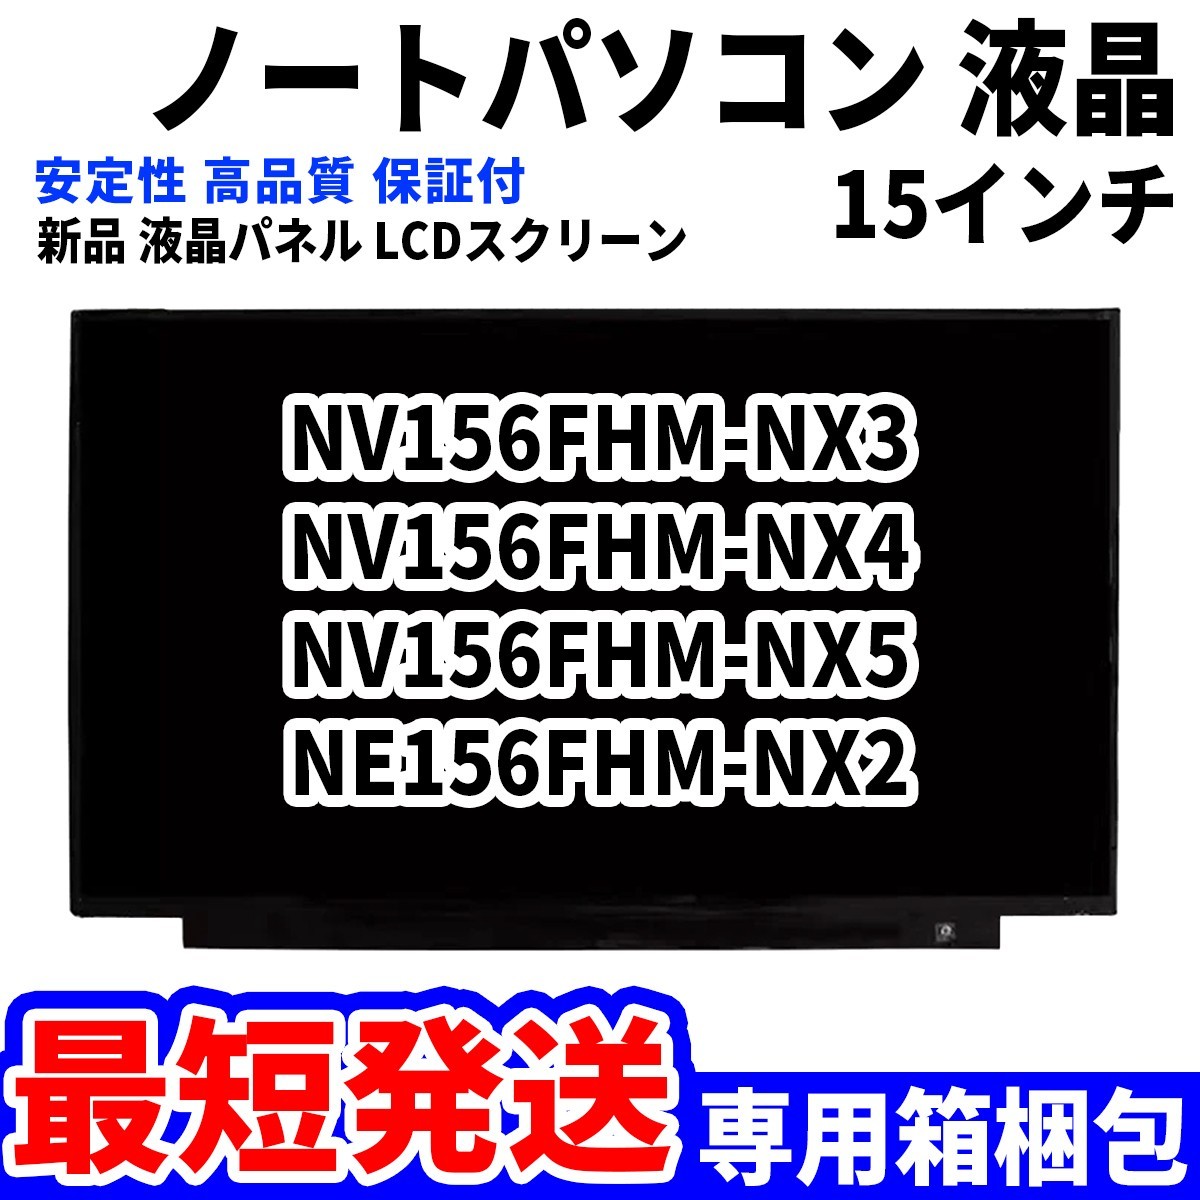 【最短発送】パソコン 液晶パネル NV156FHM-NX3 NV156FHM-NX4 NV156FHM-NX5 NE156FHM-NX2 15.6インチ 高品質 LCD ディスプレイ 交換 D-026